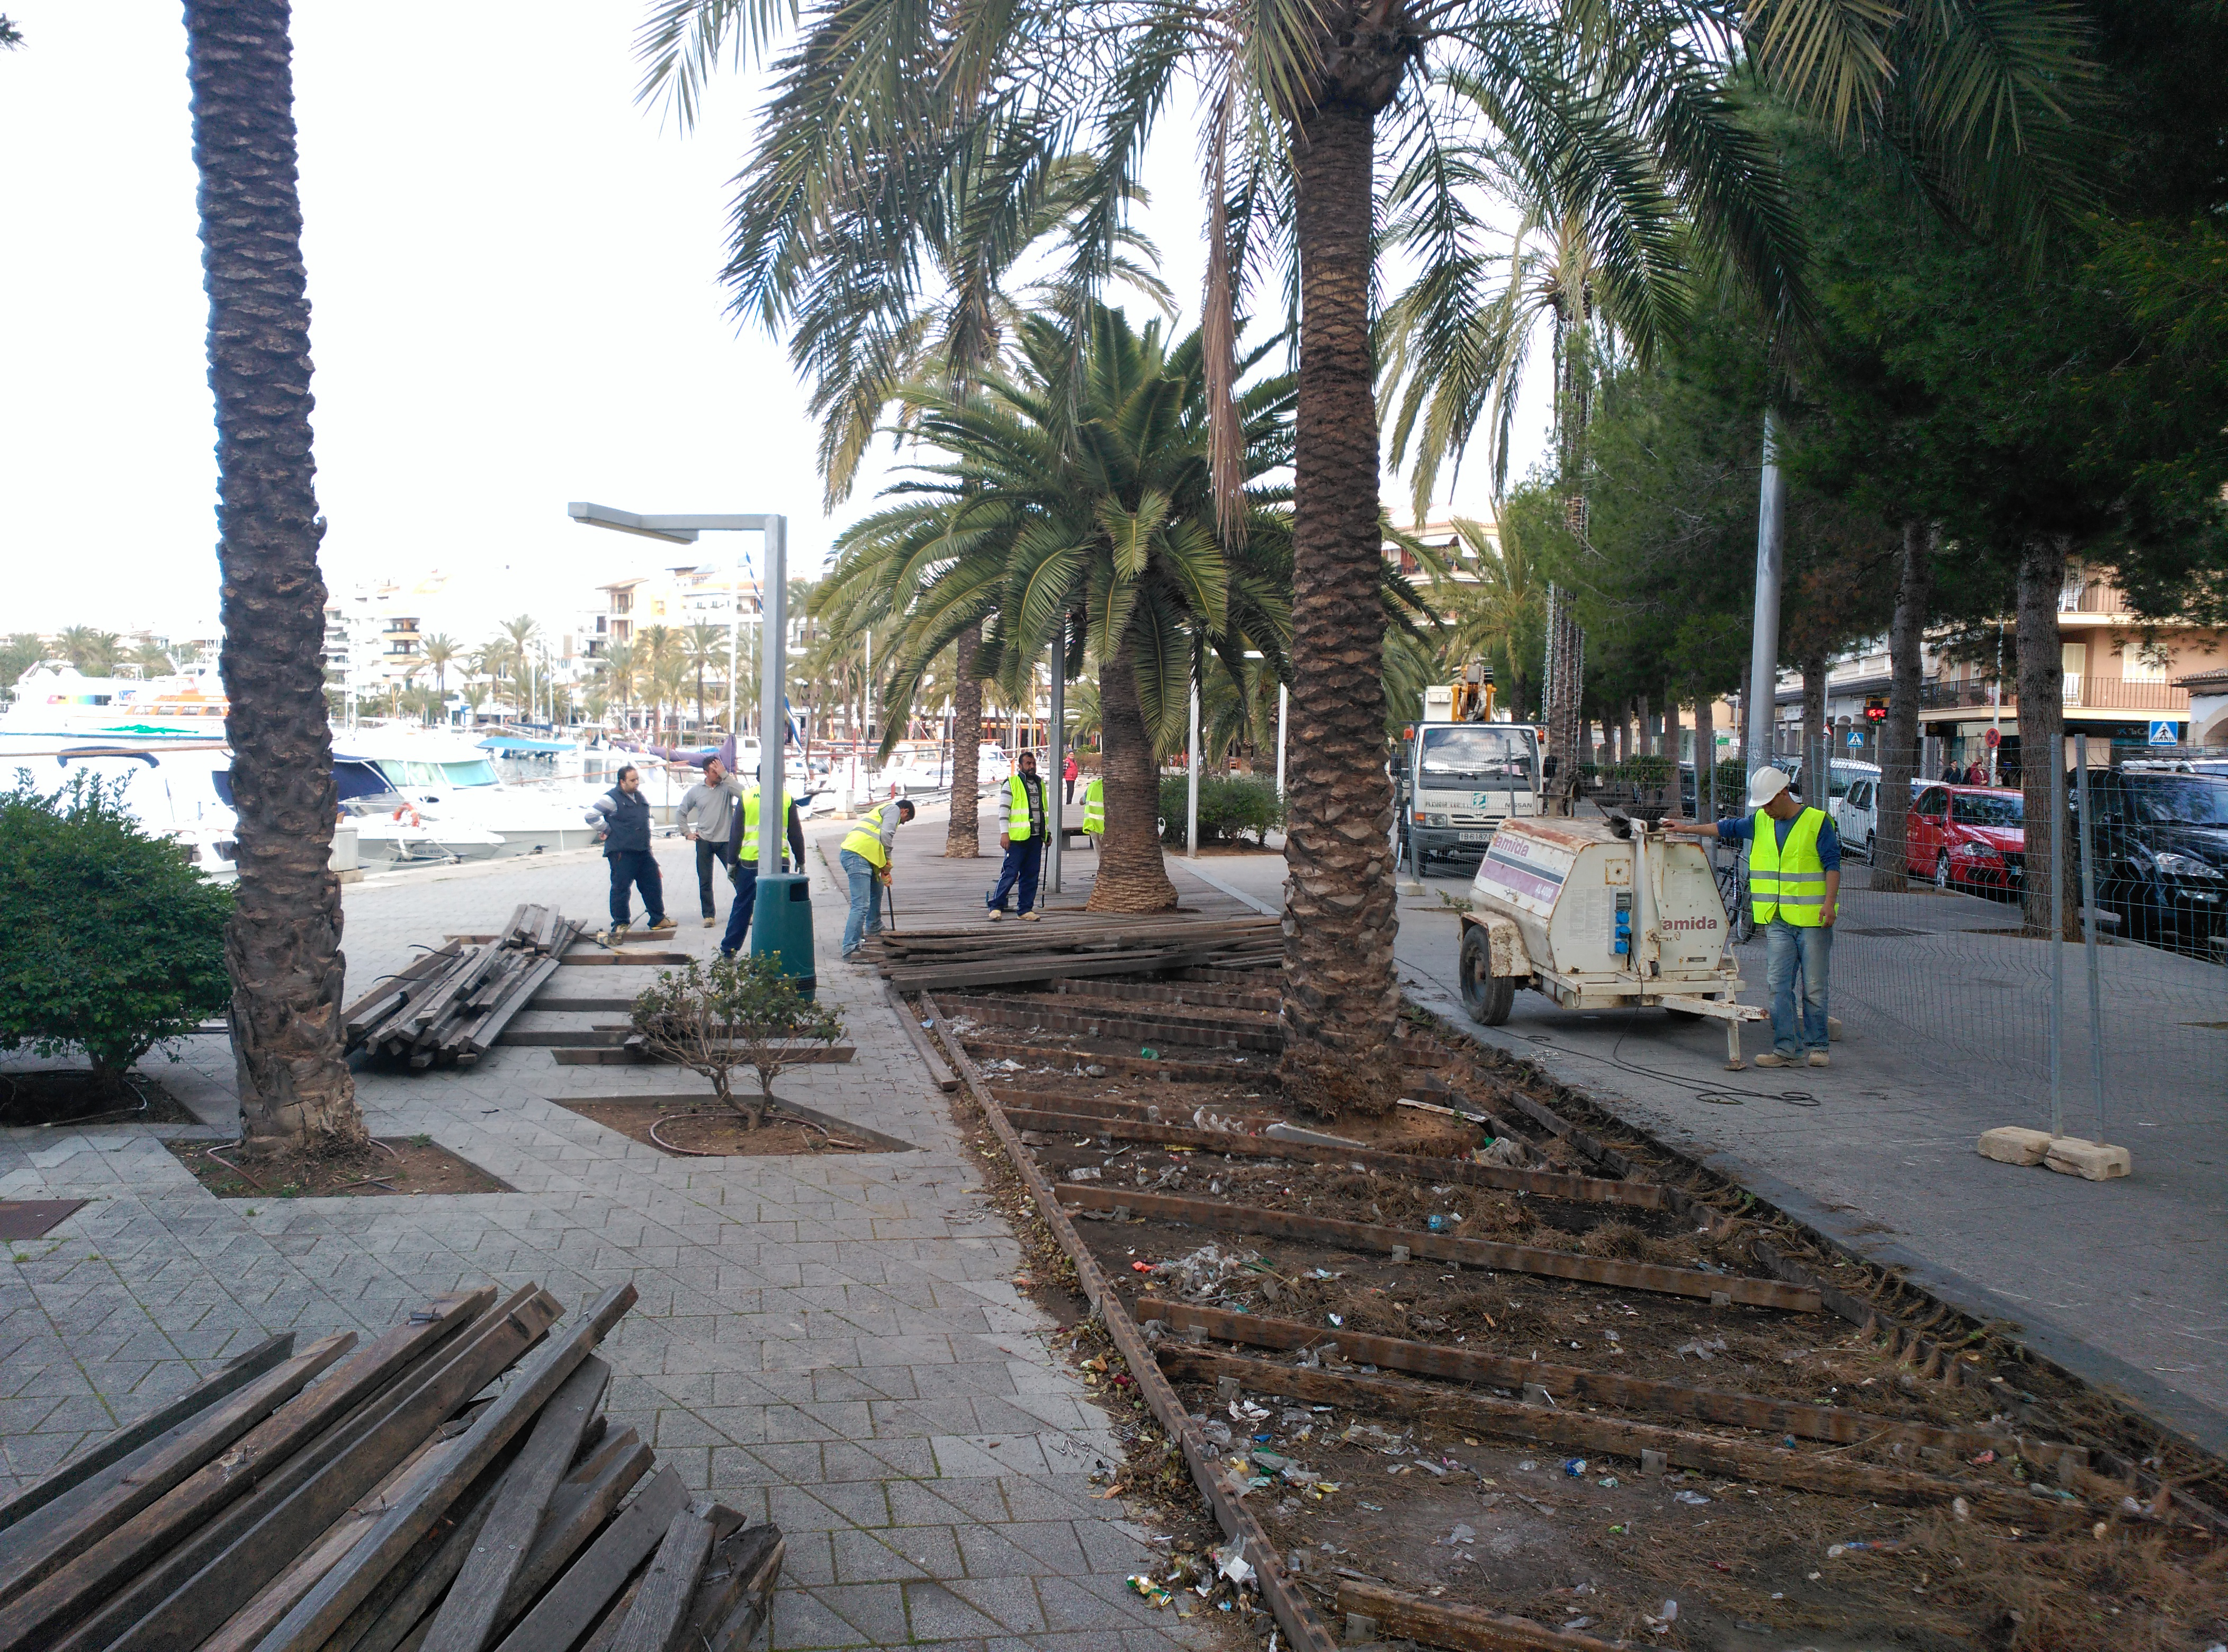 Empiezan las obras de reforma del paseo marítimo del puerto de Alcúdia